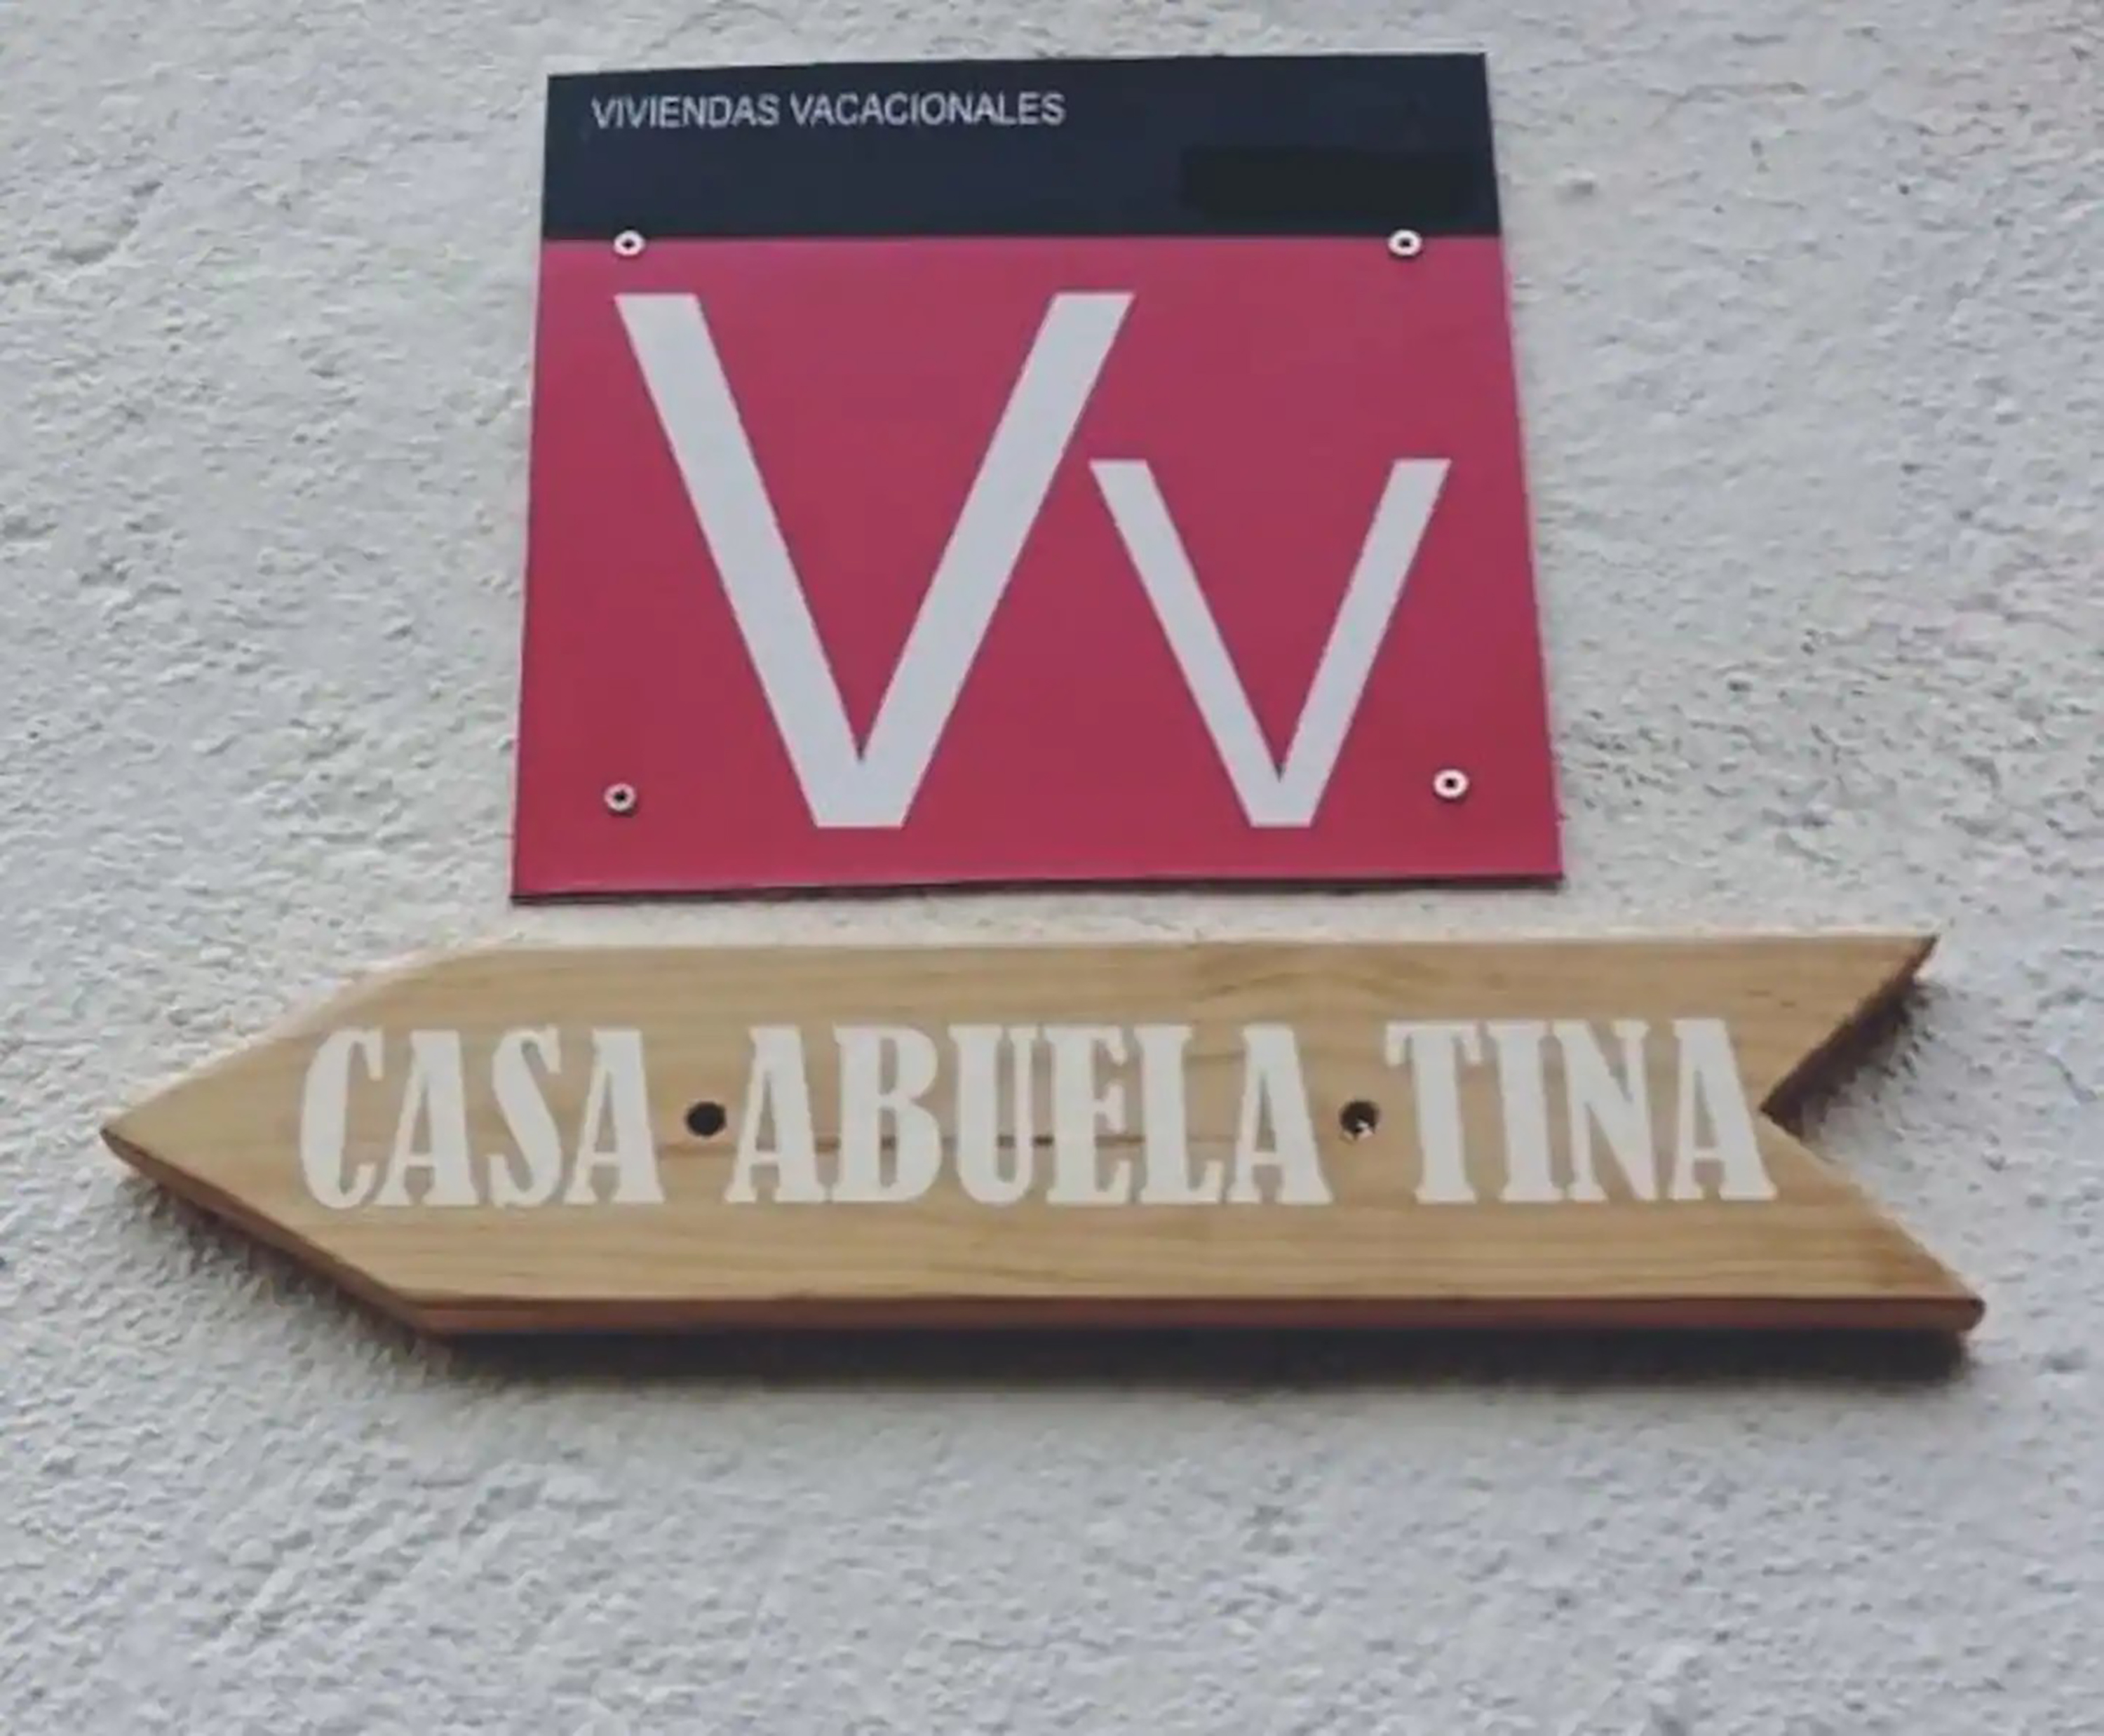 La propiedad de dos dormitorios se llama Casa Abuela Tina.